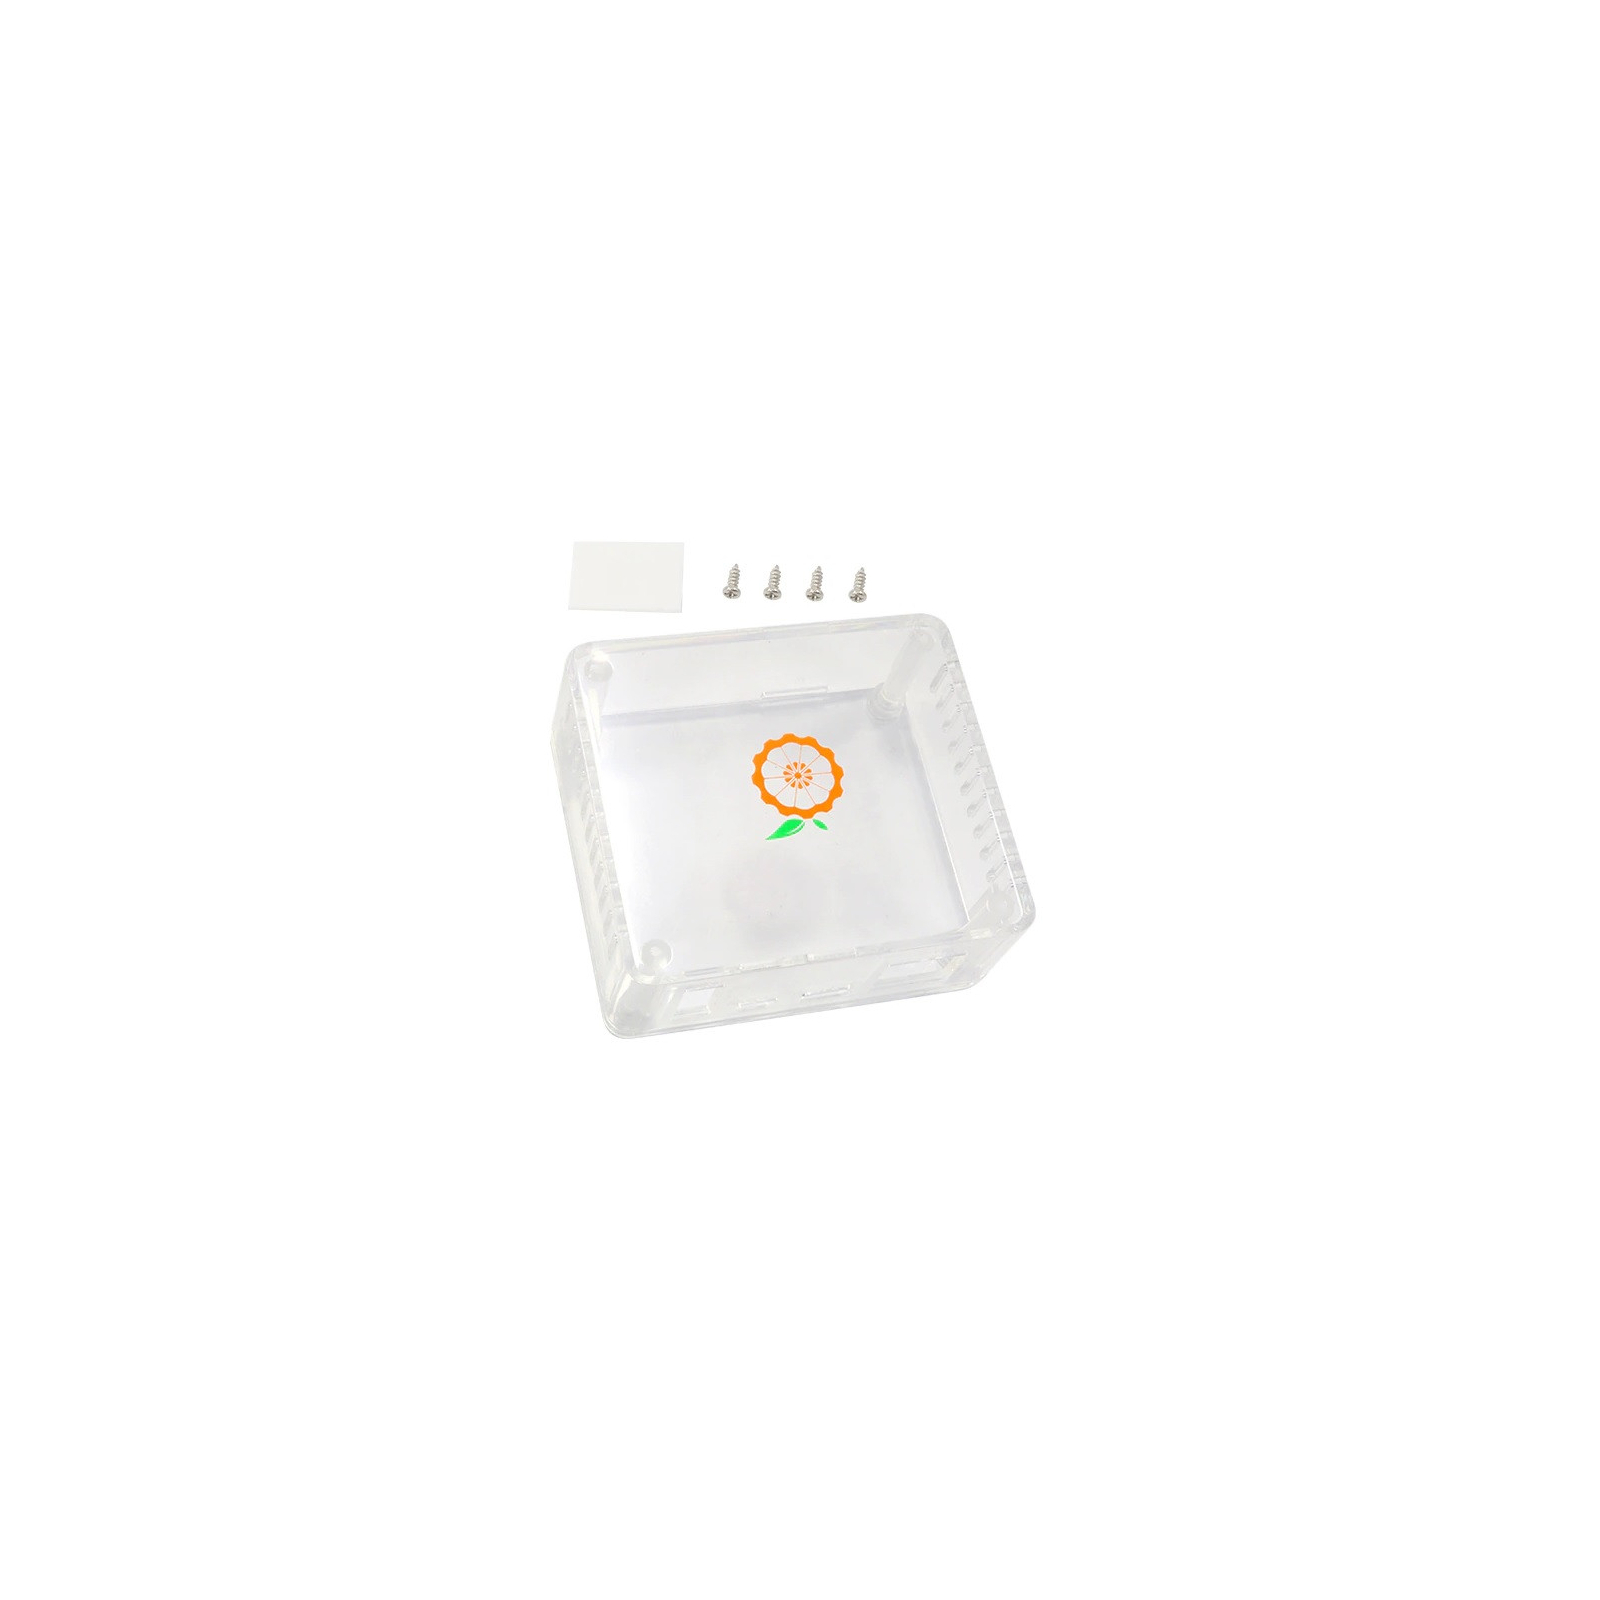 Корпус до промислового ПК Orange Pi Zero2 (ABS Transparent Case) (RD058)